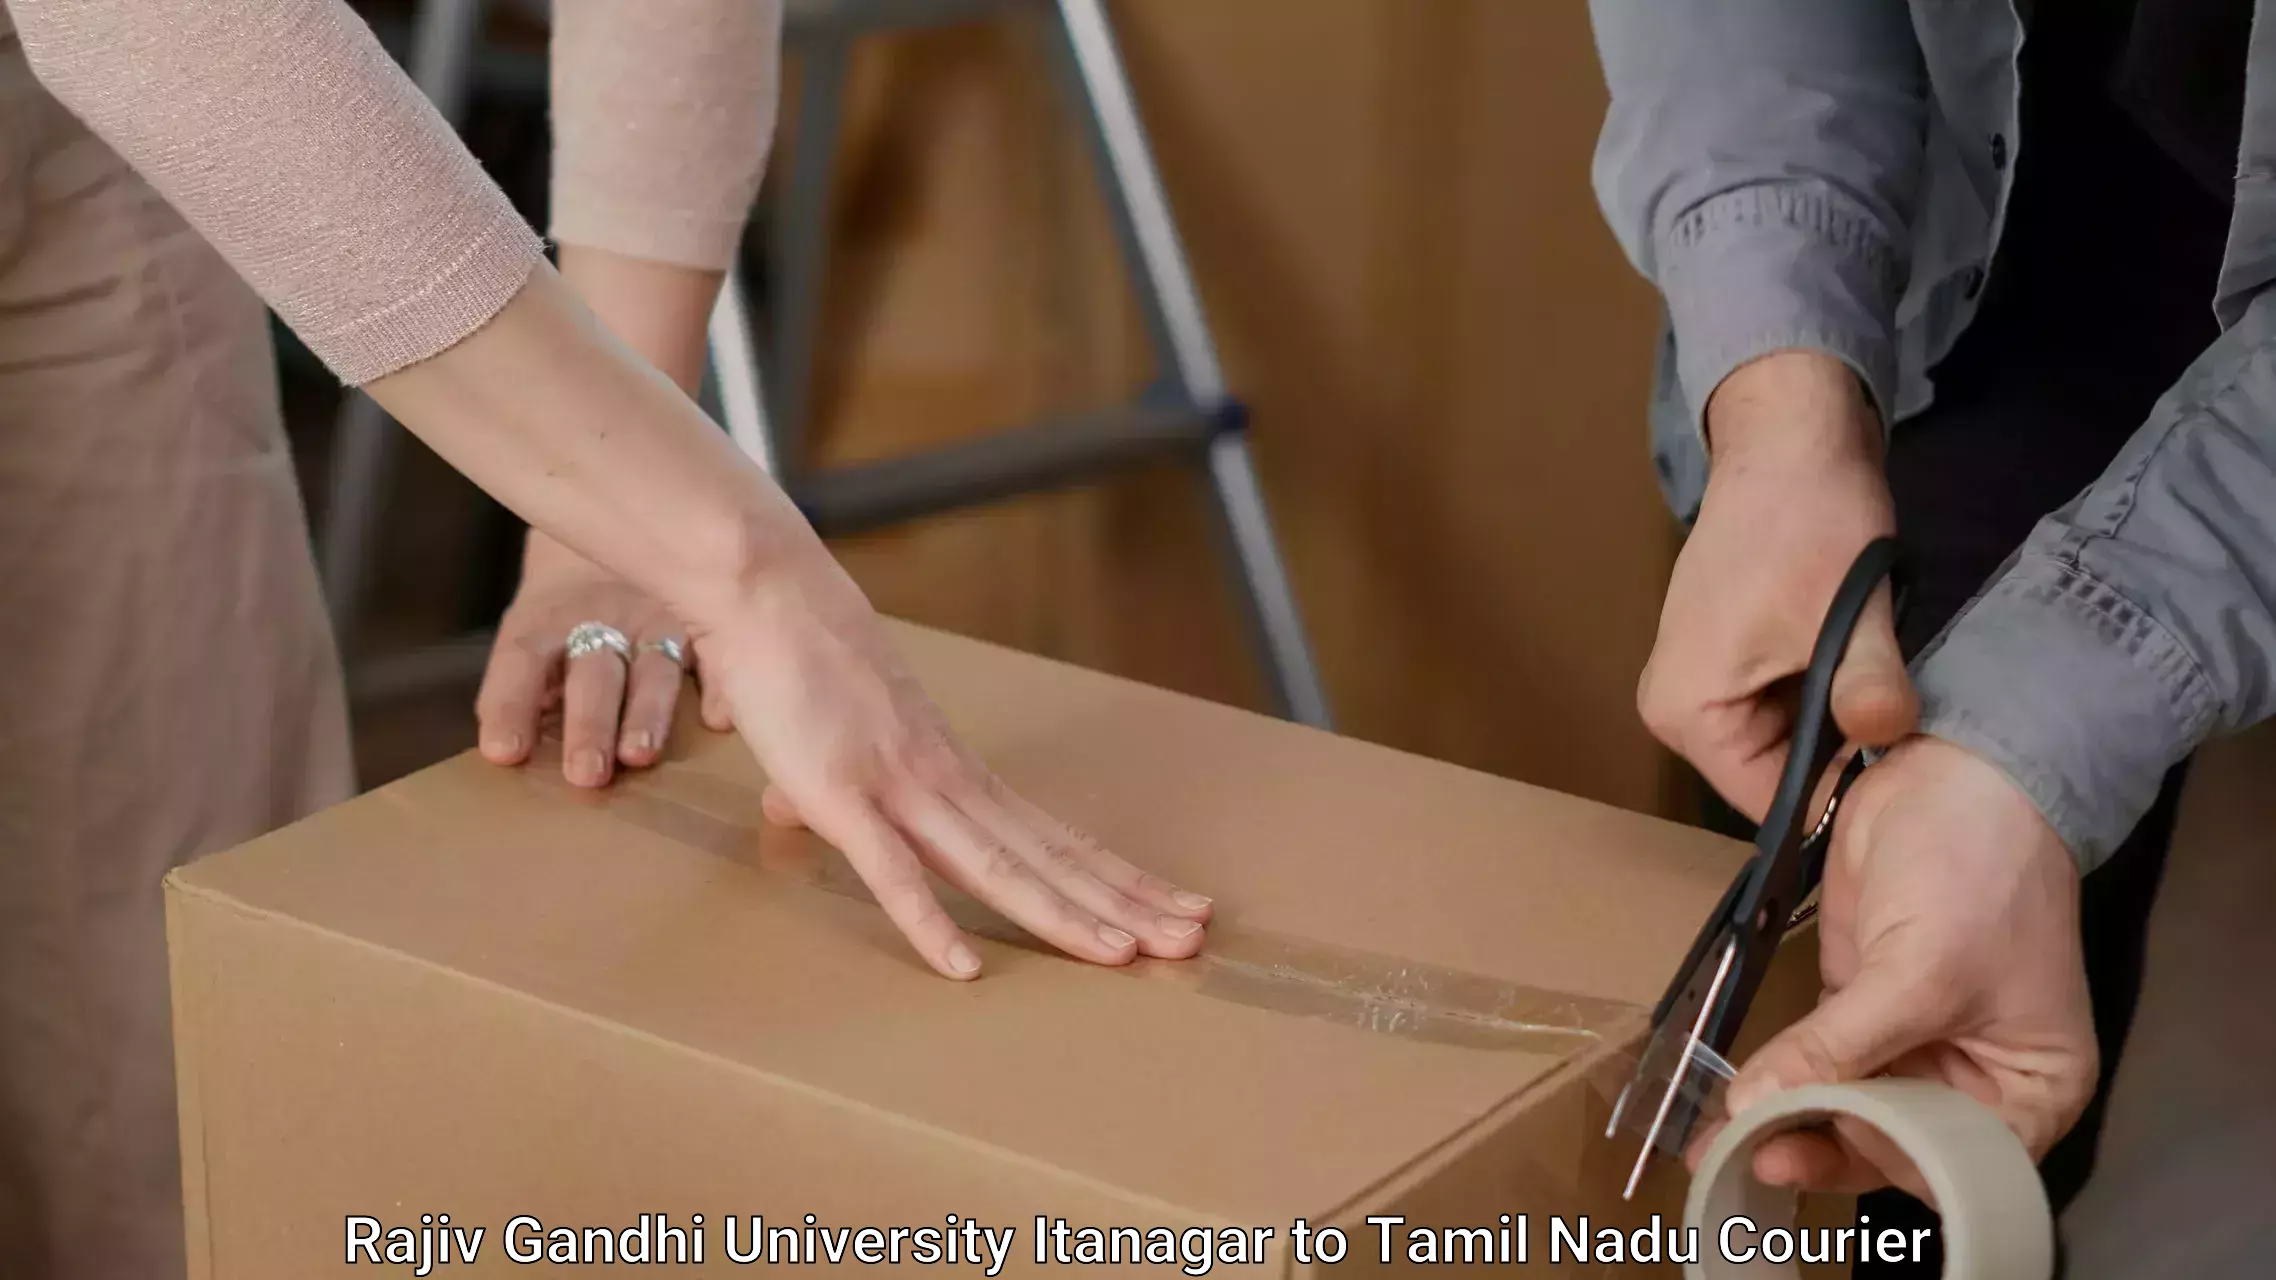 Furniture moving service Rajiv Gandhi University Itanagar to Tamil Nadu